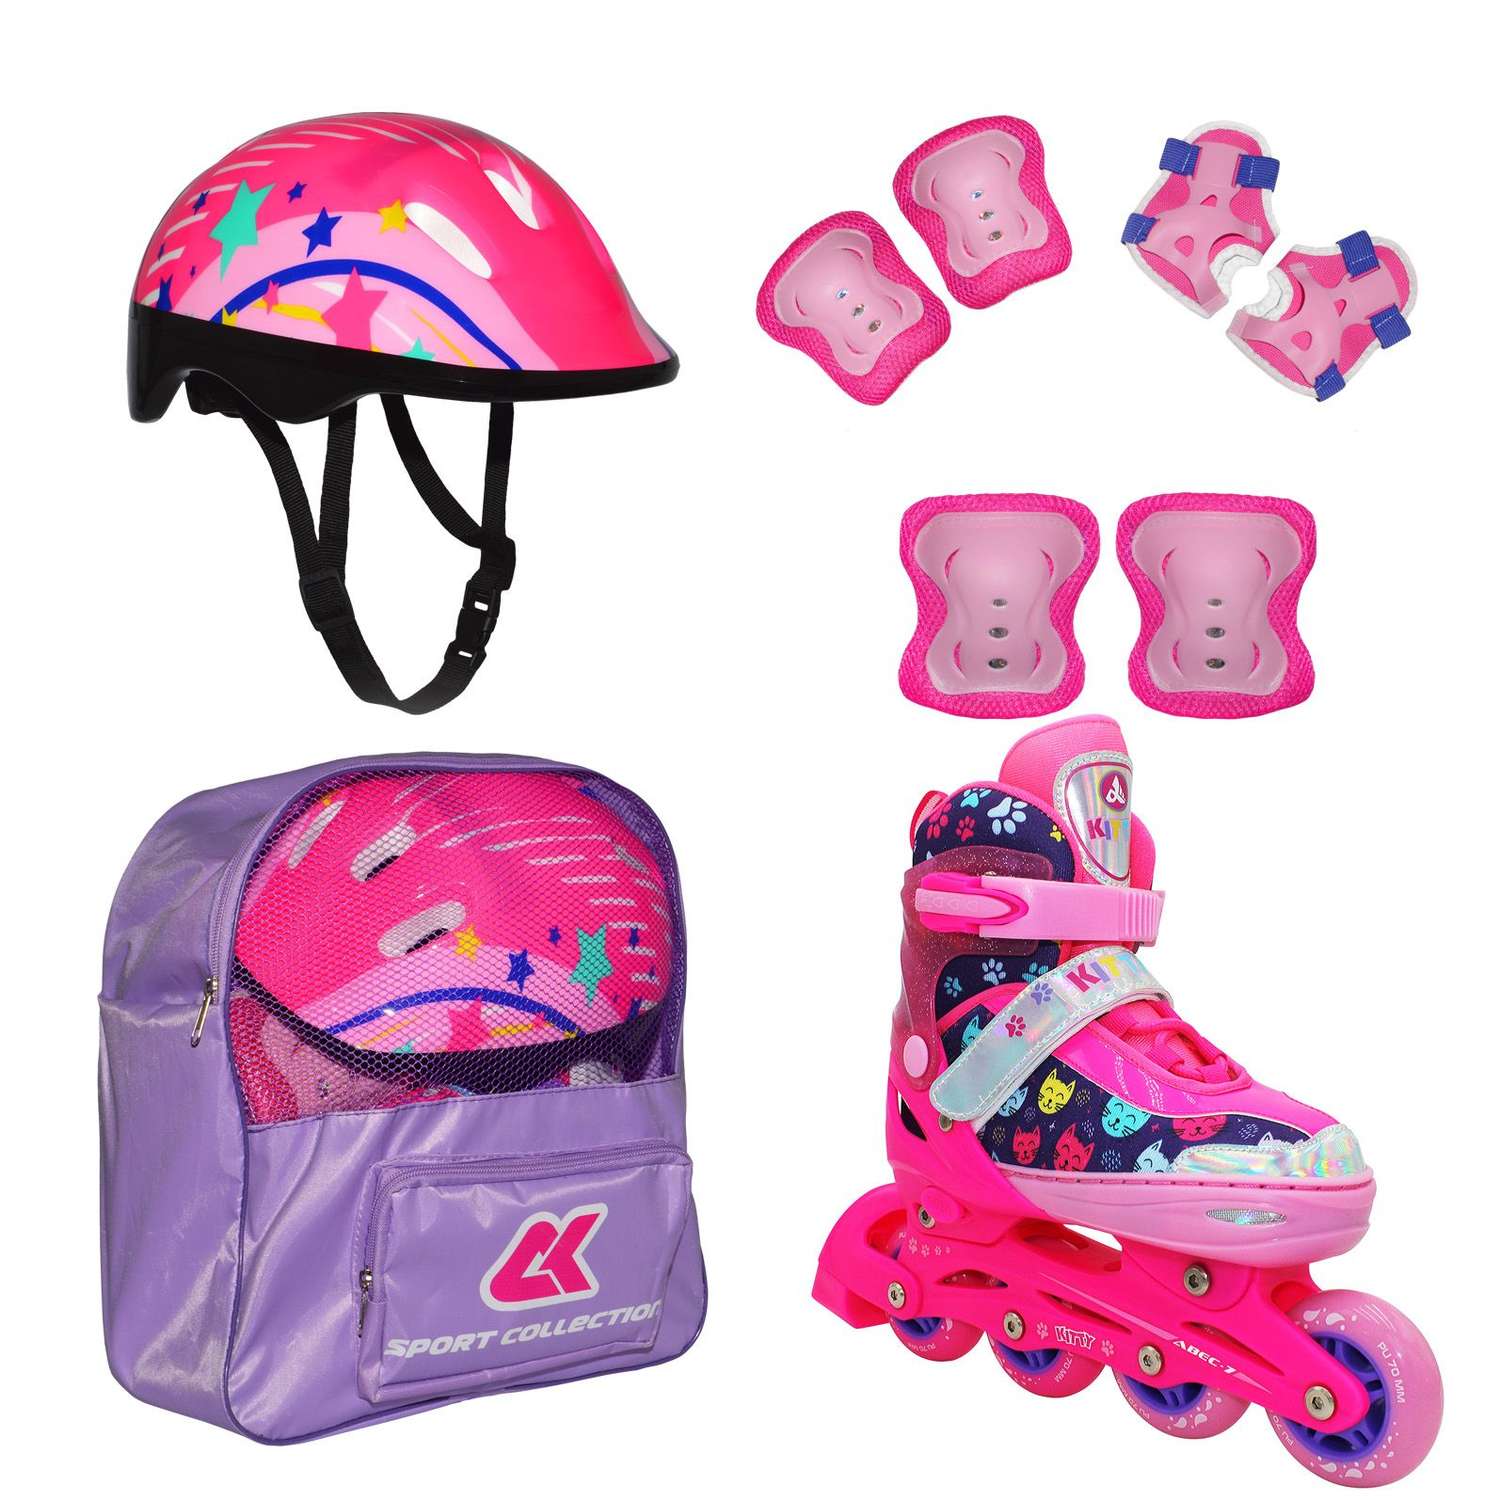 Набор роликовые коньки Sport Collection раздвижные Set Kitty Pink шлем и набор защиты в сумке размер M 33-36 - фото 1